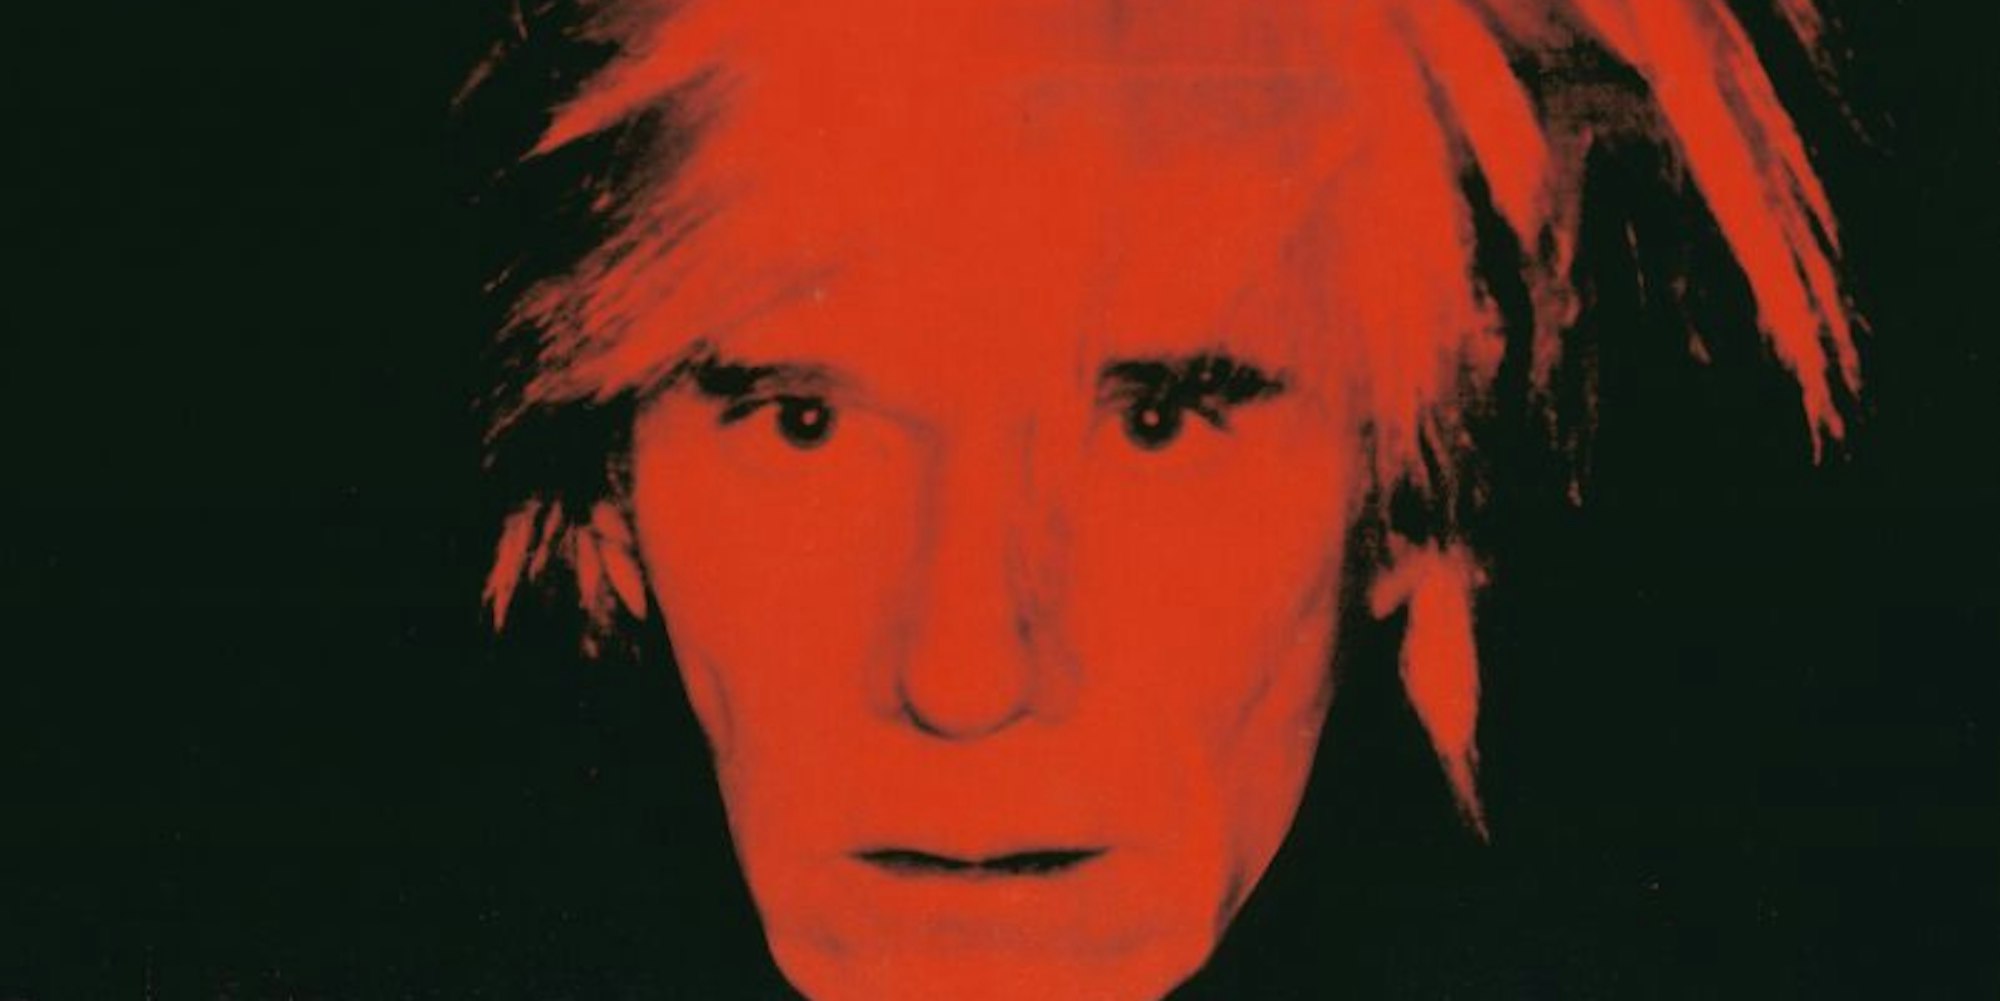 Andy Warhol, Self-Portrait, 1986, Warhol Foundation